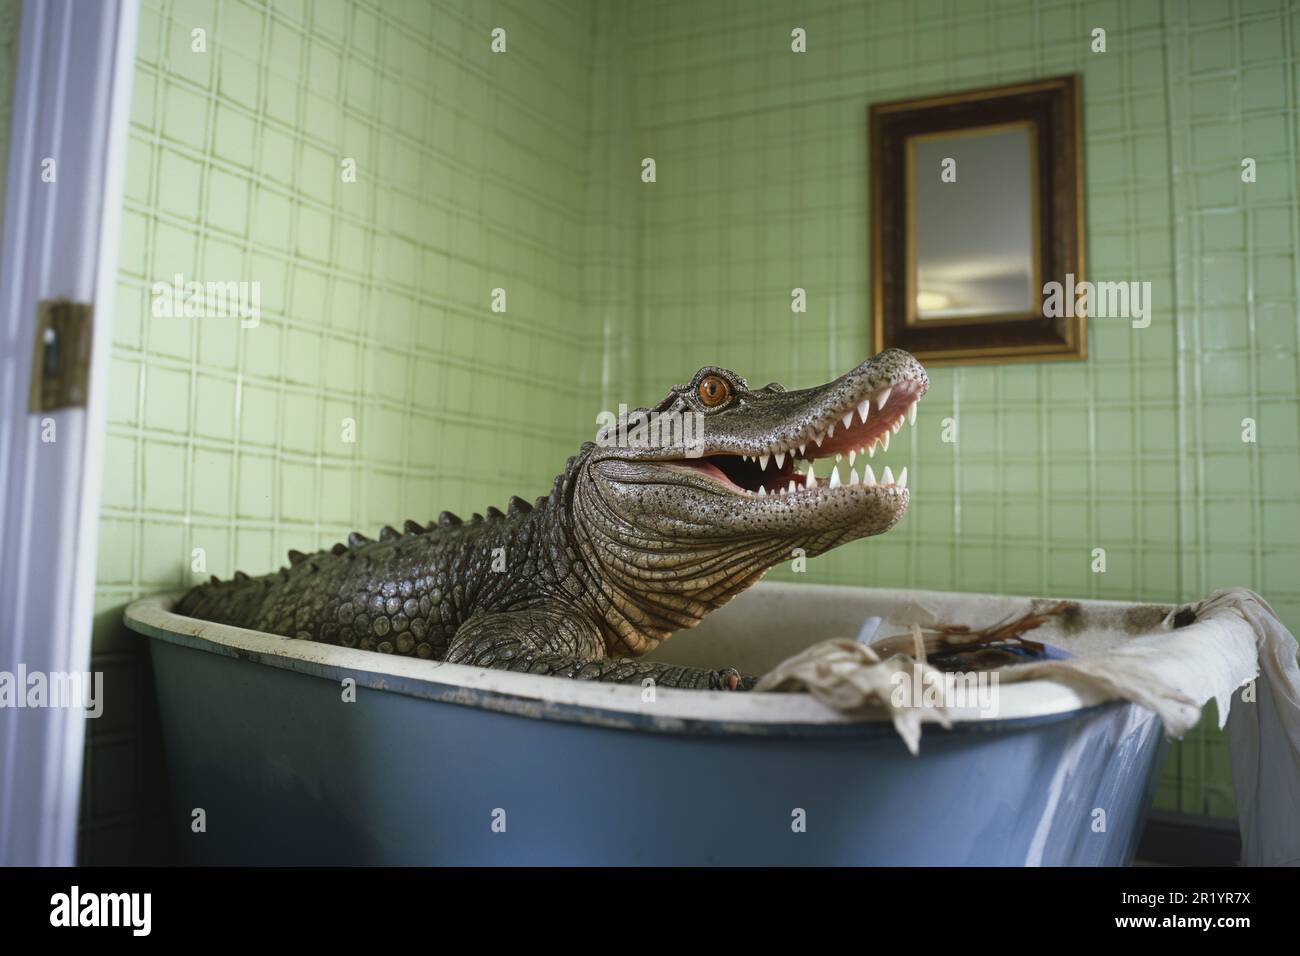 Verspieltes Krokodil in der Badewanne, eigenartige Einrichtung im Badezimmer Stockfoto